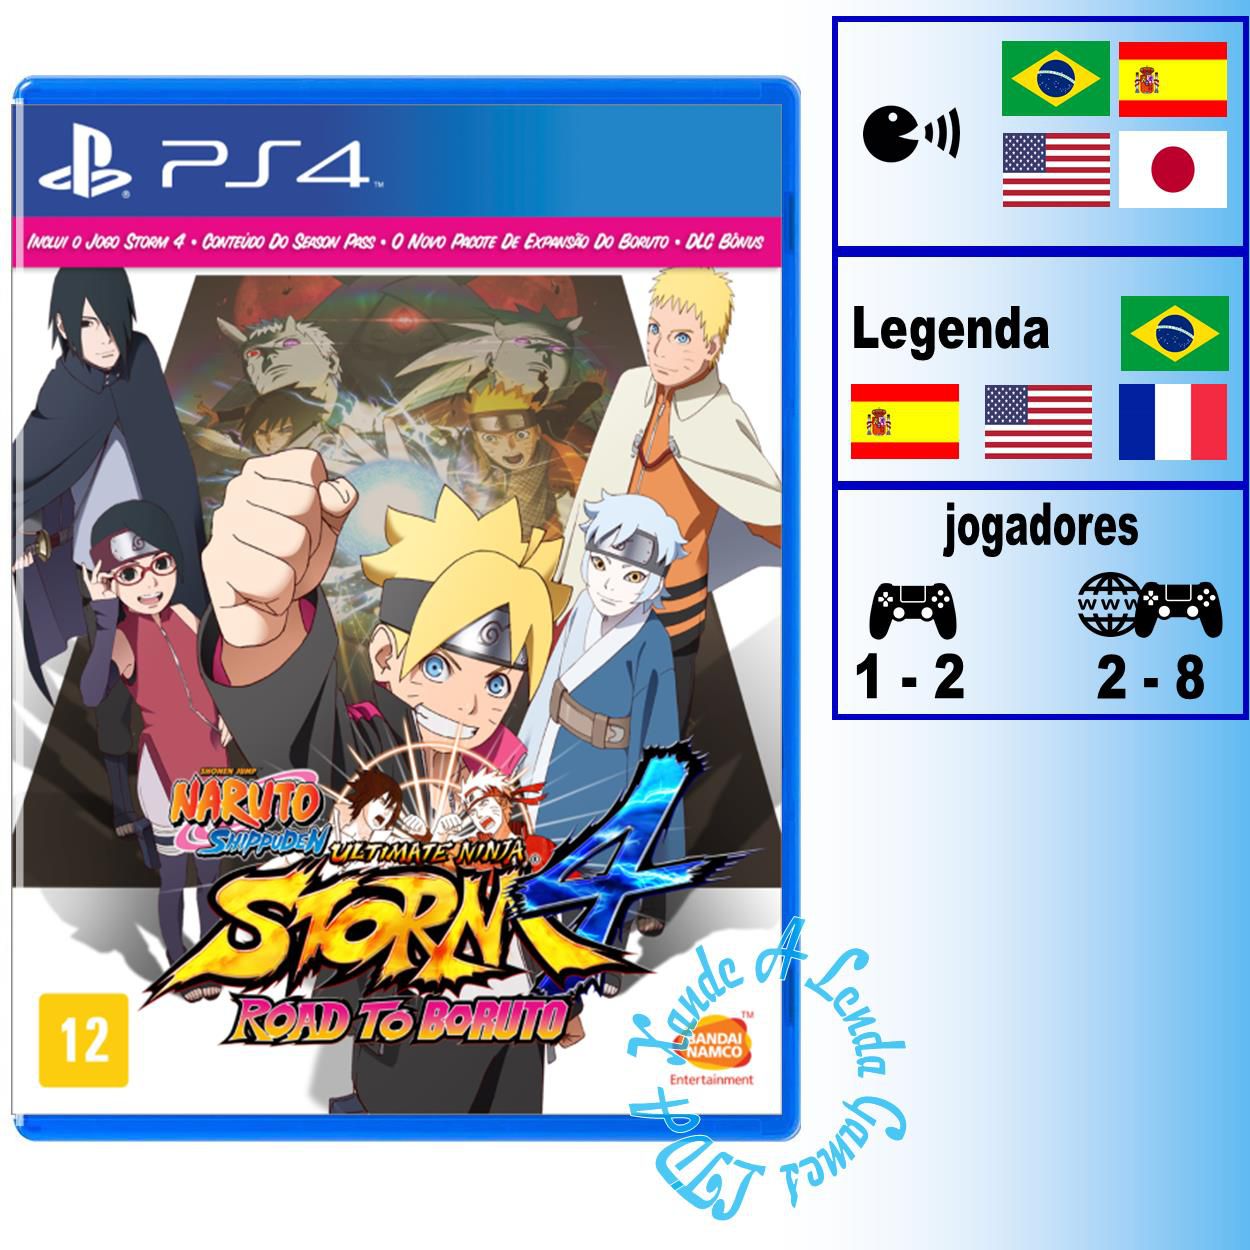 Comprar Naruto to Boruto Shinobi Striker para PS4 - mídia física - Xande A  Lenda Games. A sua loja de jogos!